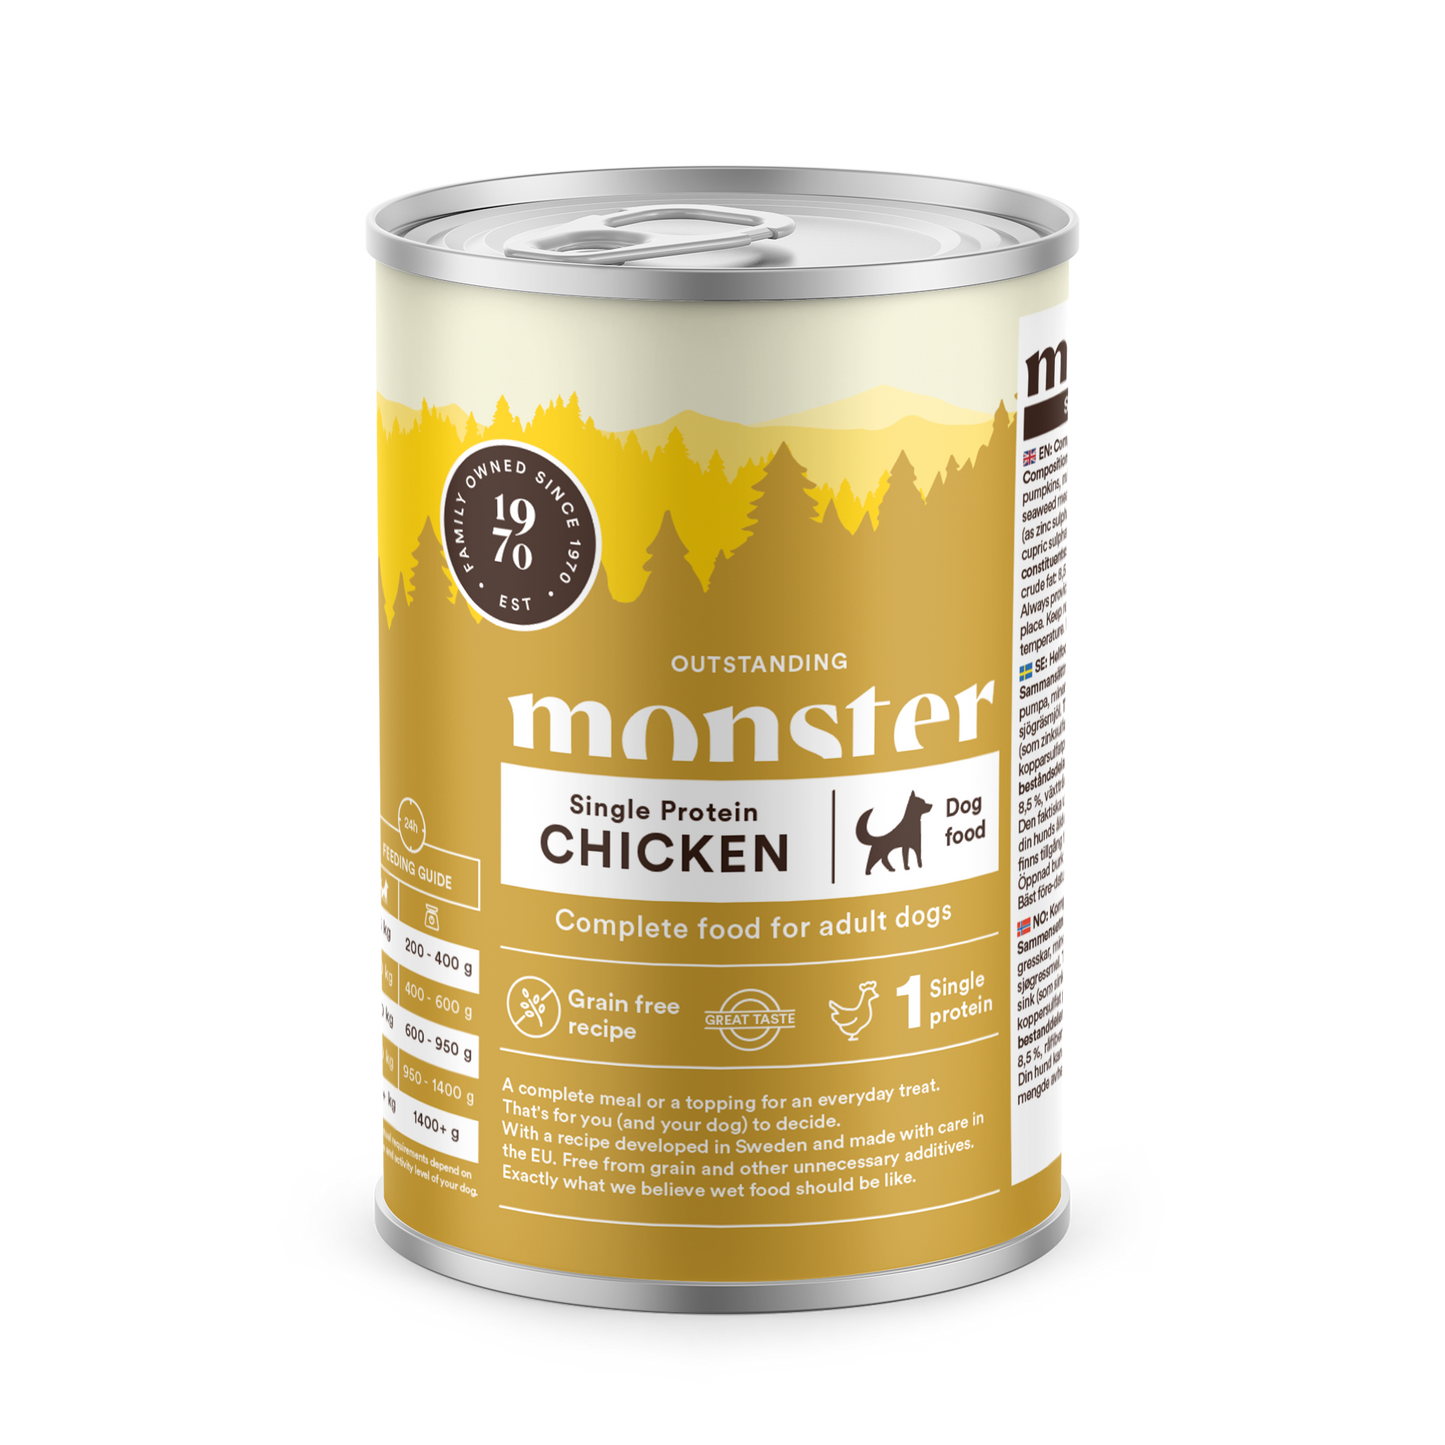 Monster Single Protein Chicken